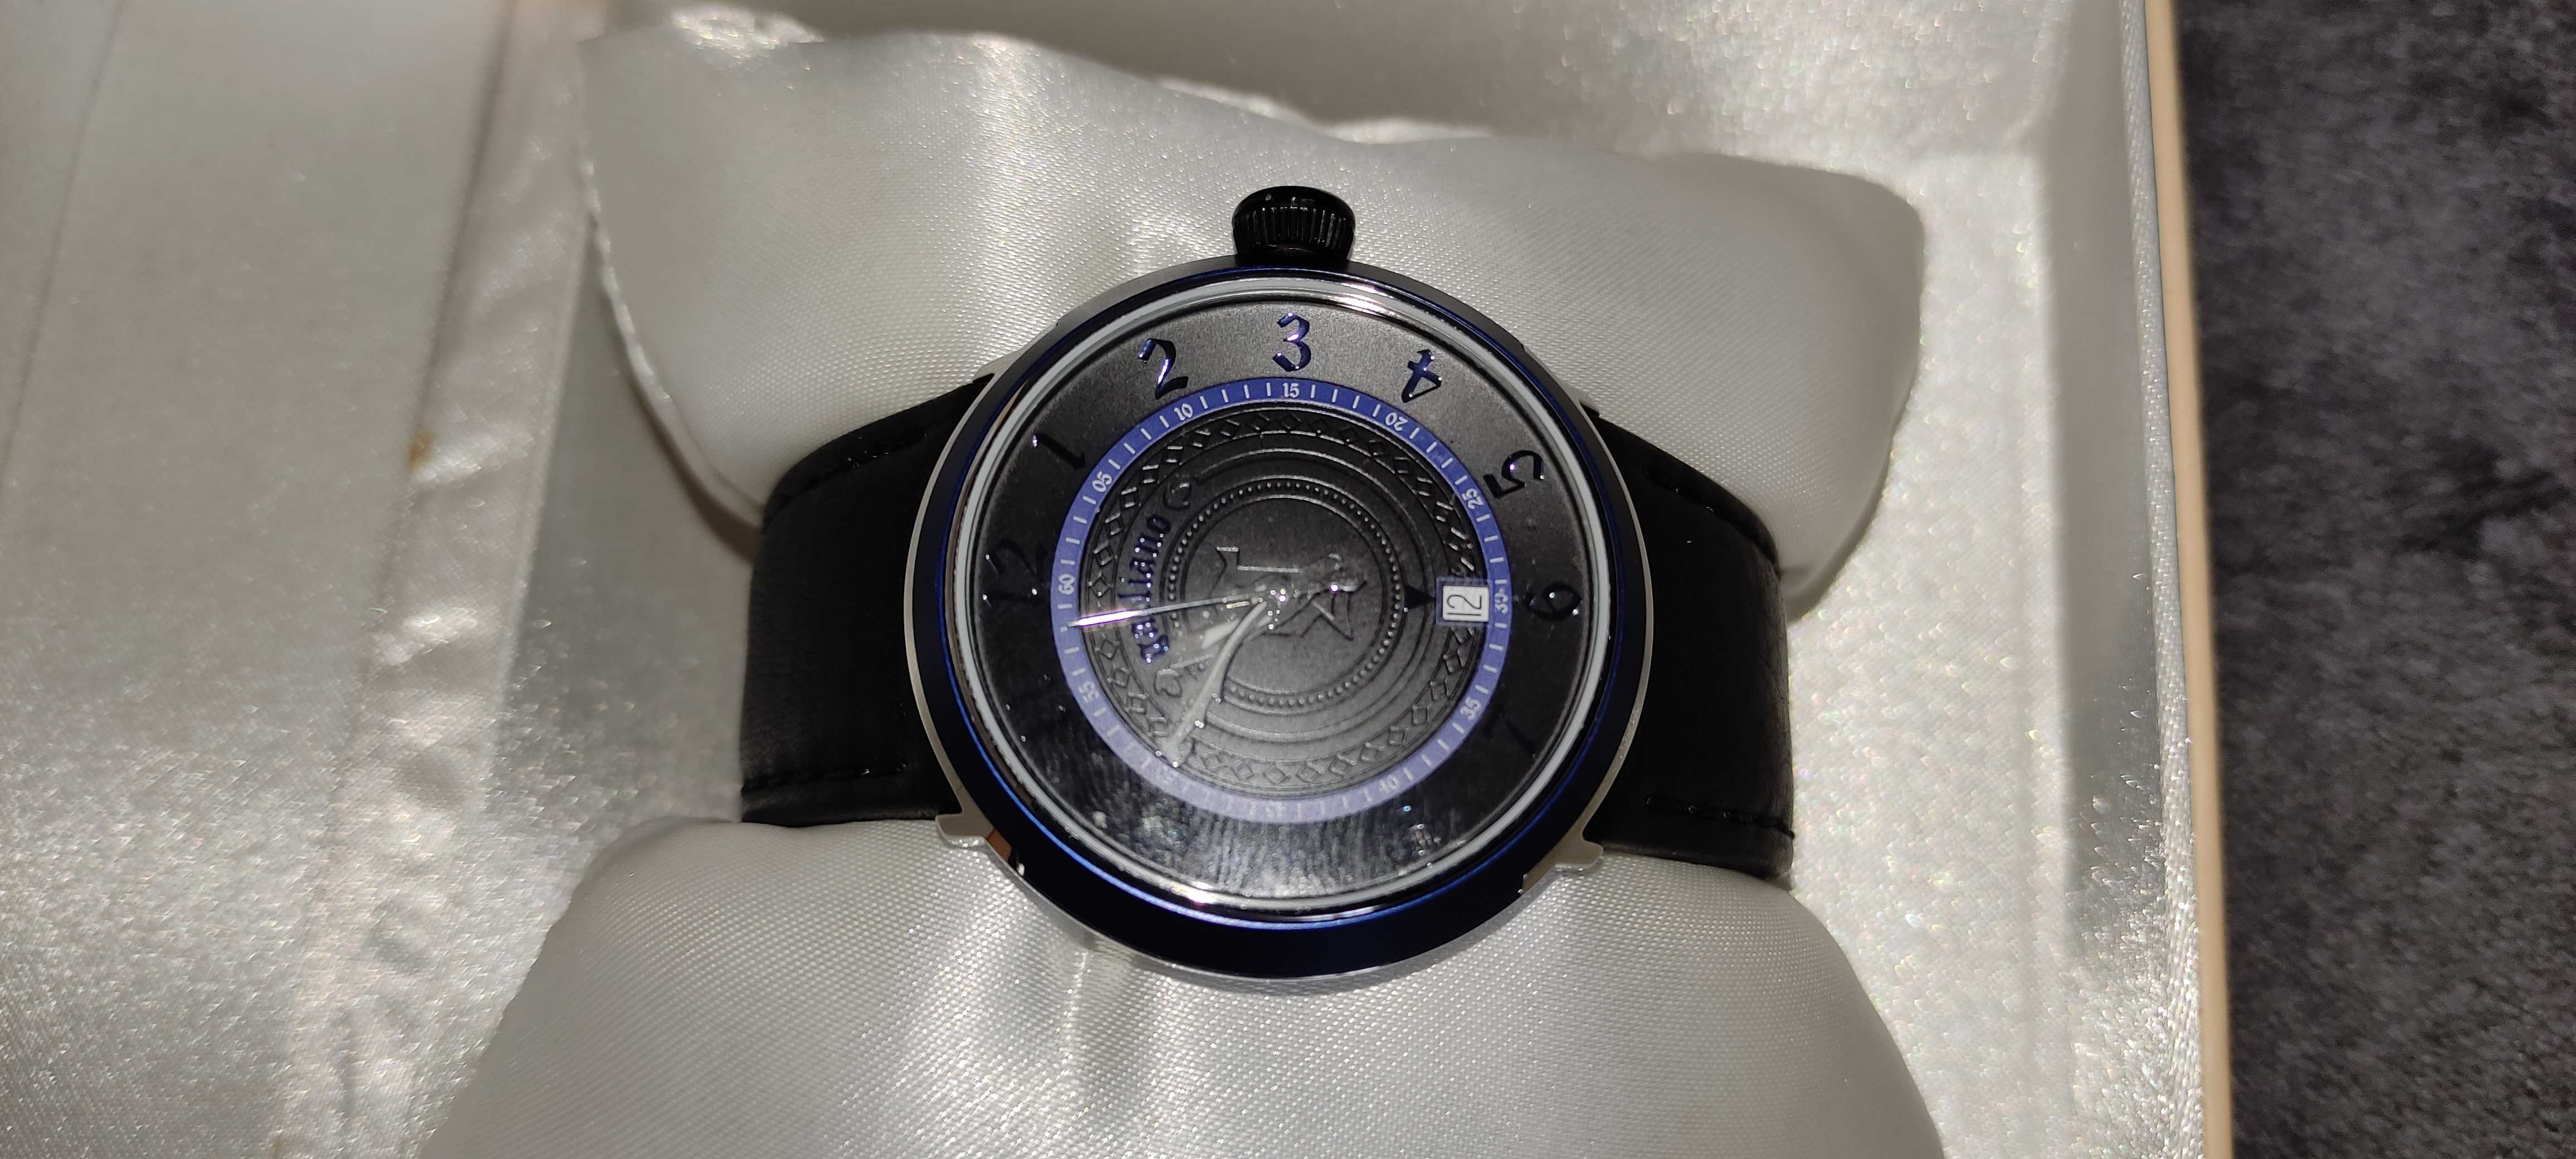 Zegarek marki Galliano